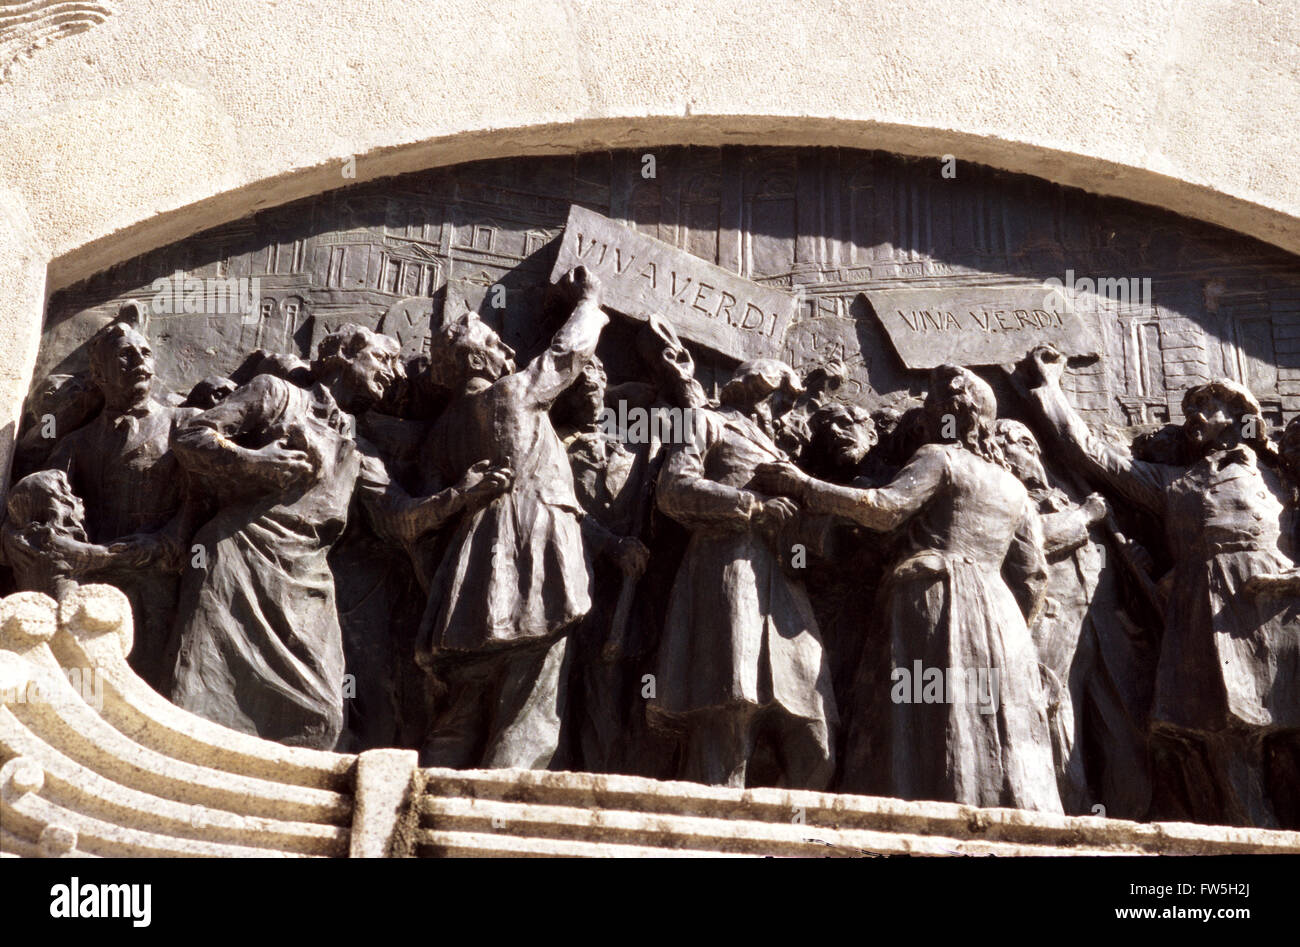 Ara "(Denkmal) von Verdi (Italiens), italienischer Komponist, Rückseite"Viva Verdi". Denkmal in zentralen Parma (in der Nähe von Verdis Geburtsort, Le Roncole, und seine Heimat später bei Busseto) Verdi zu feiern, der Komponist und seine Rolle im Kampf für die Einheit Italiens. Stockfoto